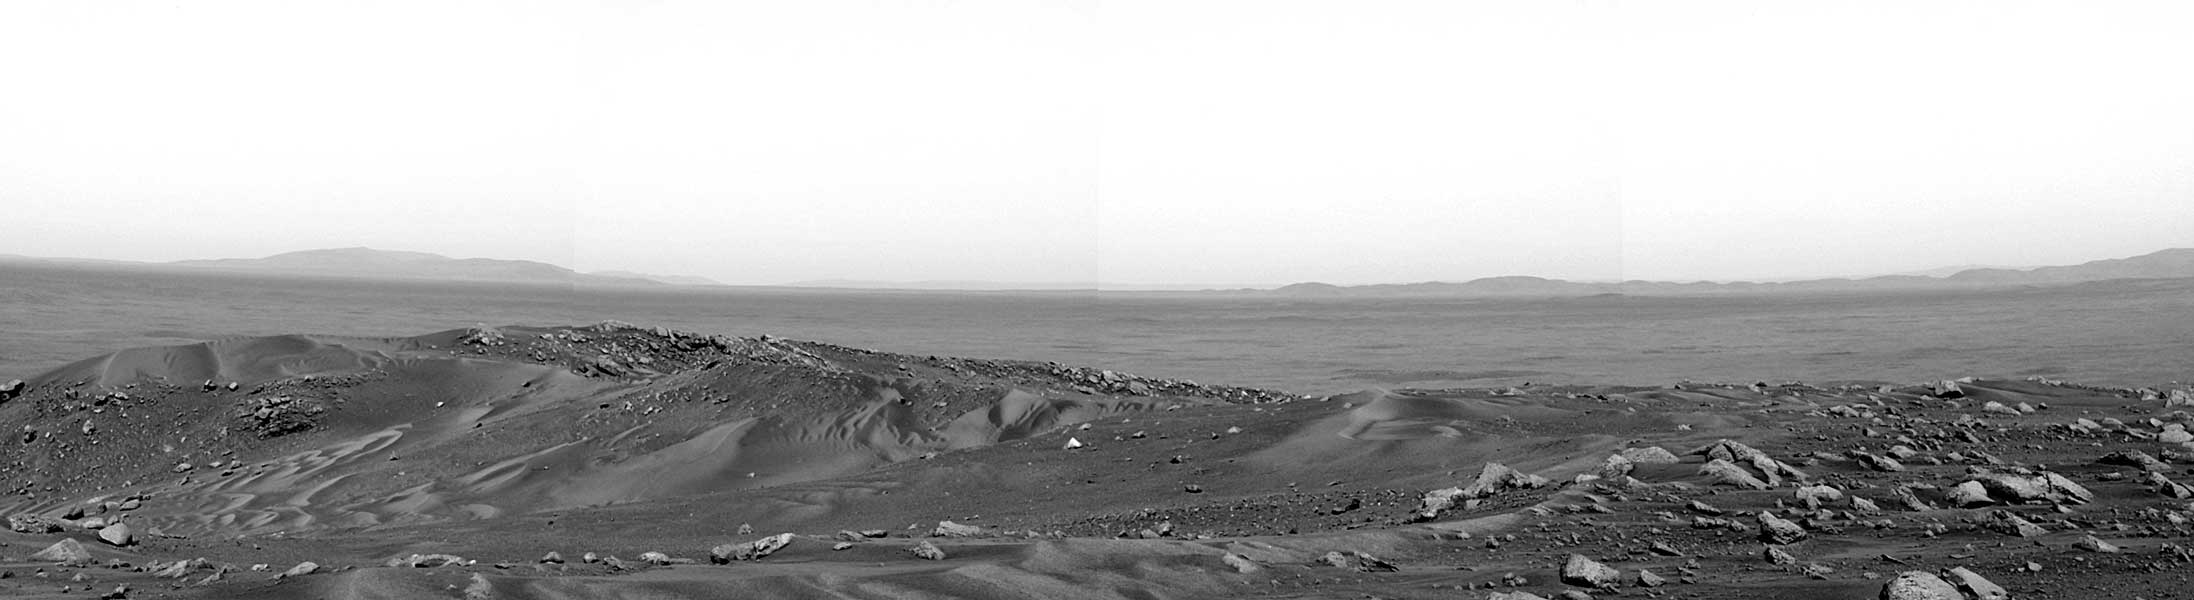 La Vista dal marito Hill su Marte